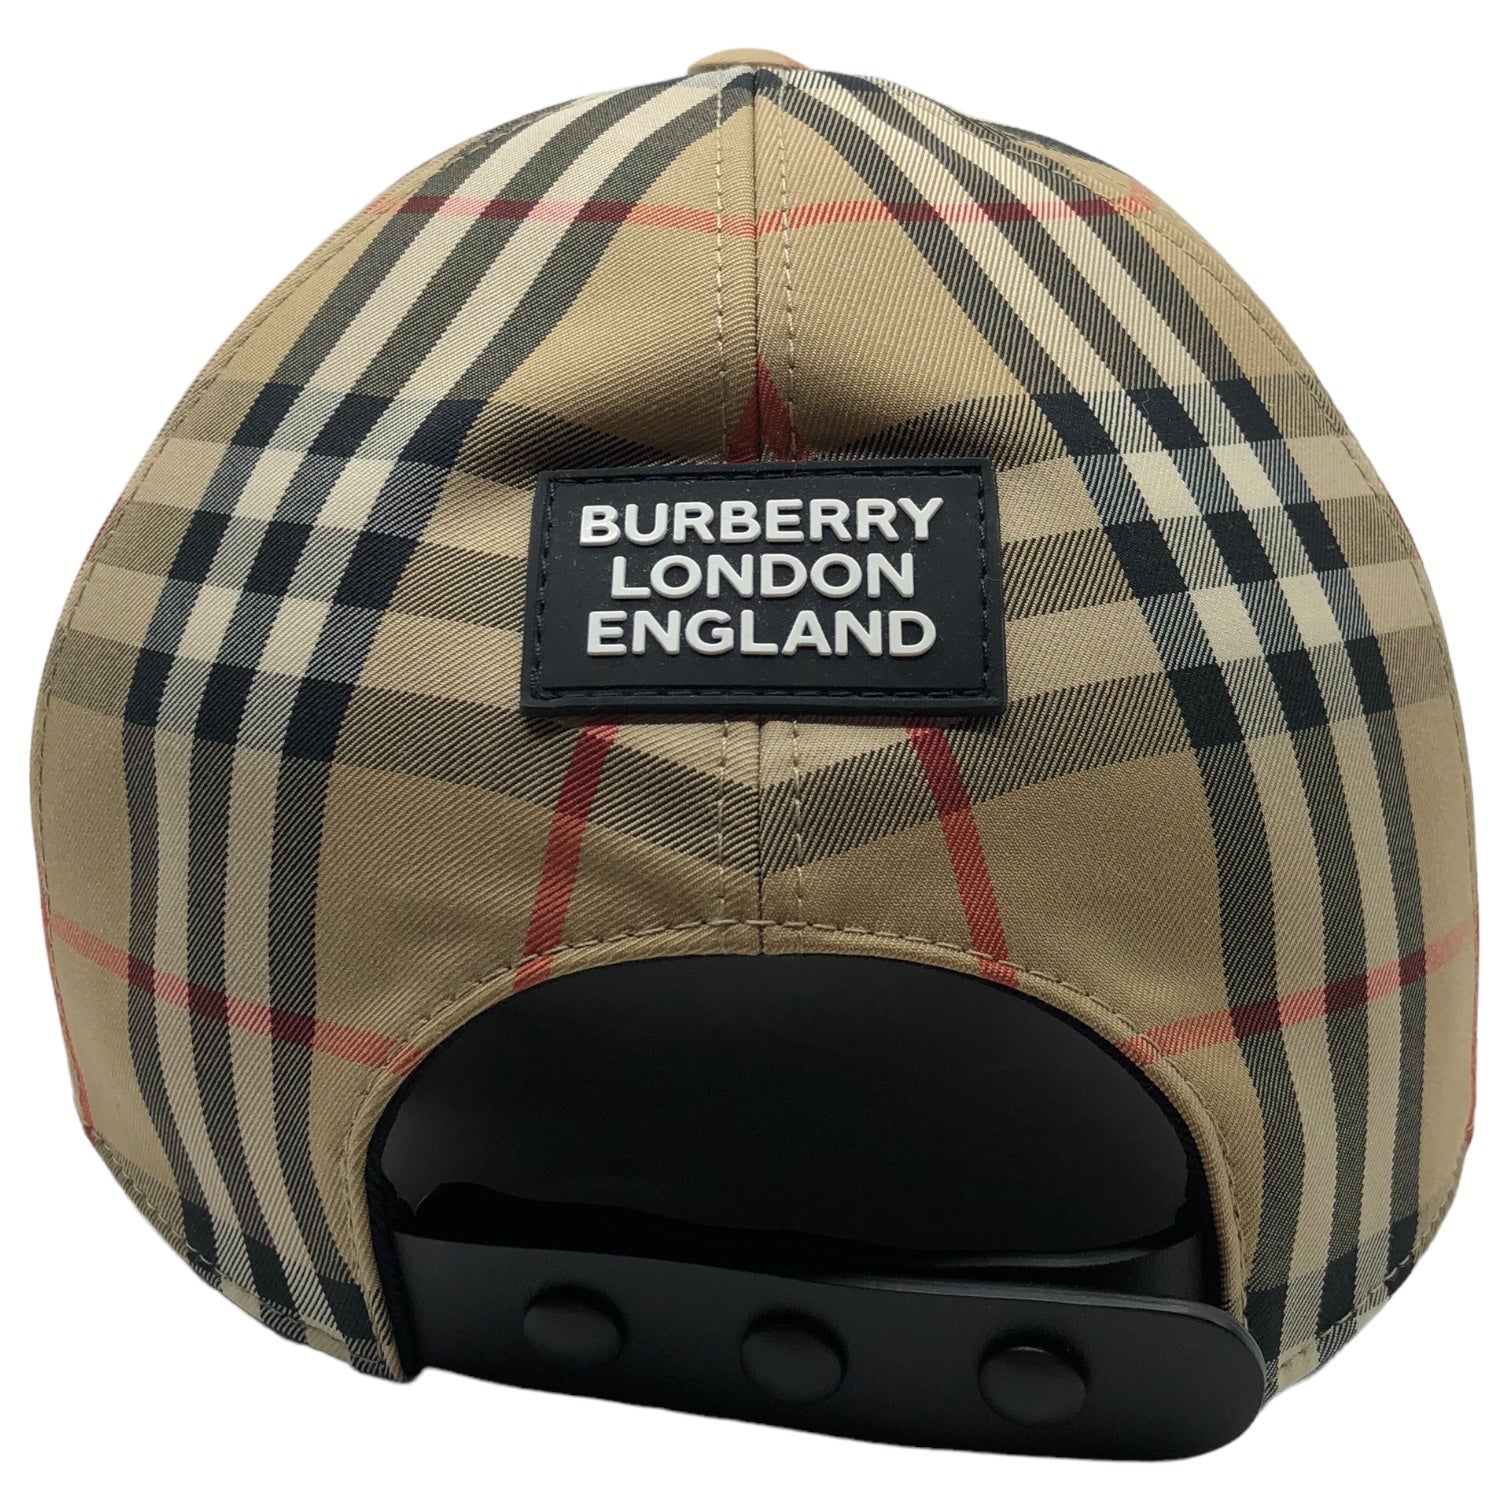 BURBERRY(バーバリー) 21SS Buberry check cap バーバリーチェック キャップ 8026929/70F L ベージュ×ブラック×レッド